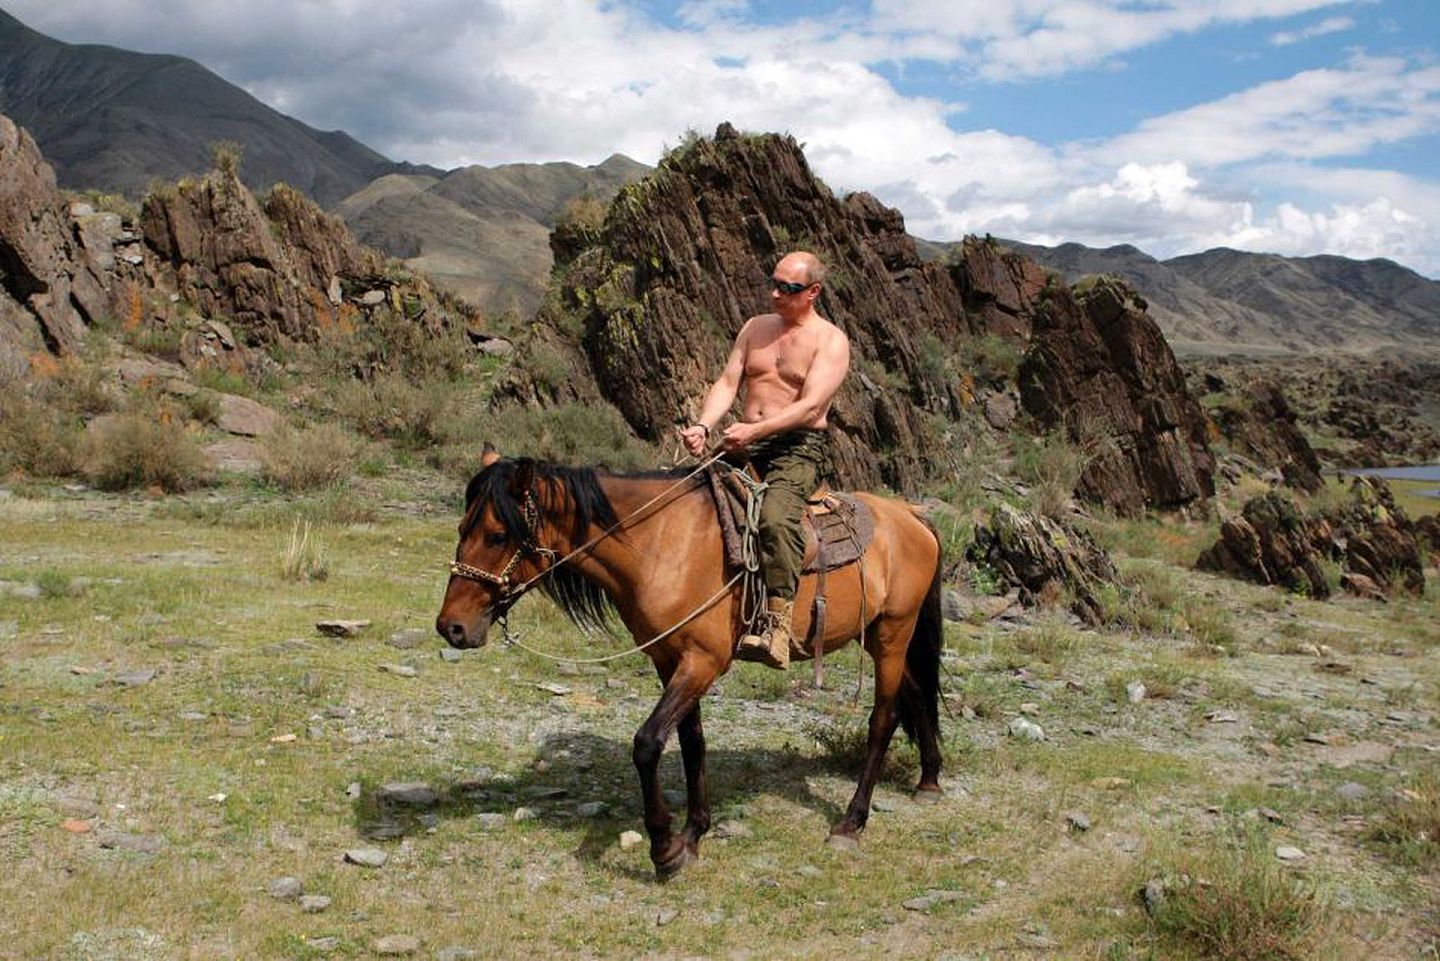 普京赤裸着上身骑马。普京赤裸上身的做法在俄罗斯还引发了狂潮，许多民众纷纷效仿。（克里姆林宫网站）